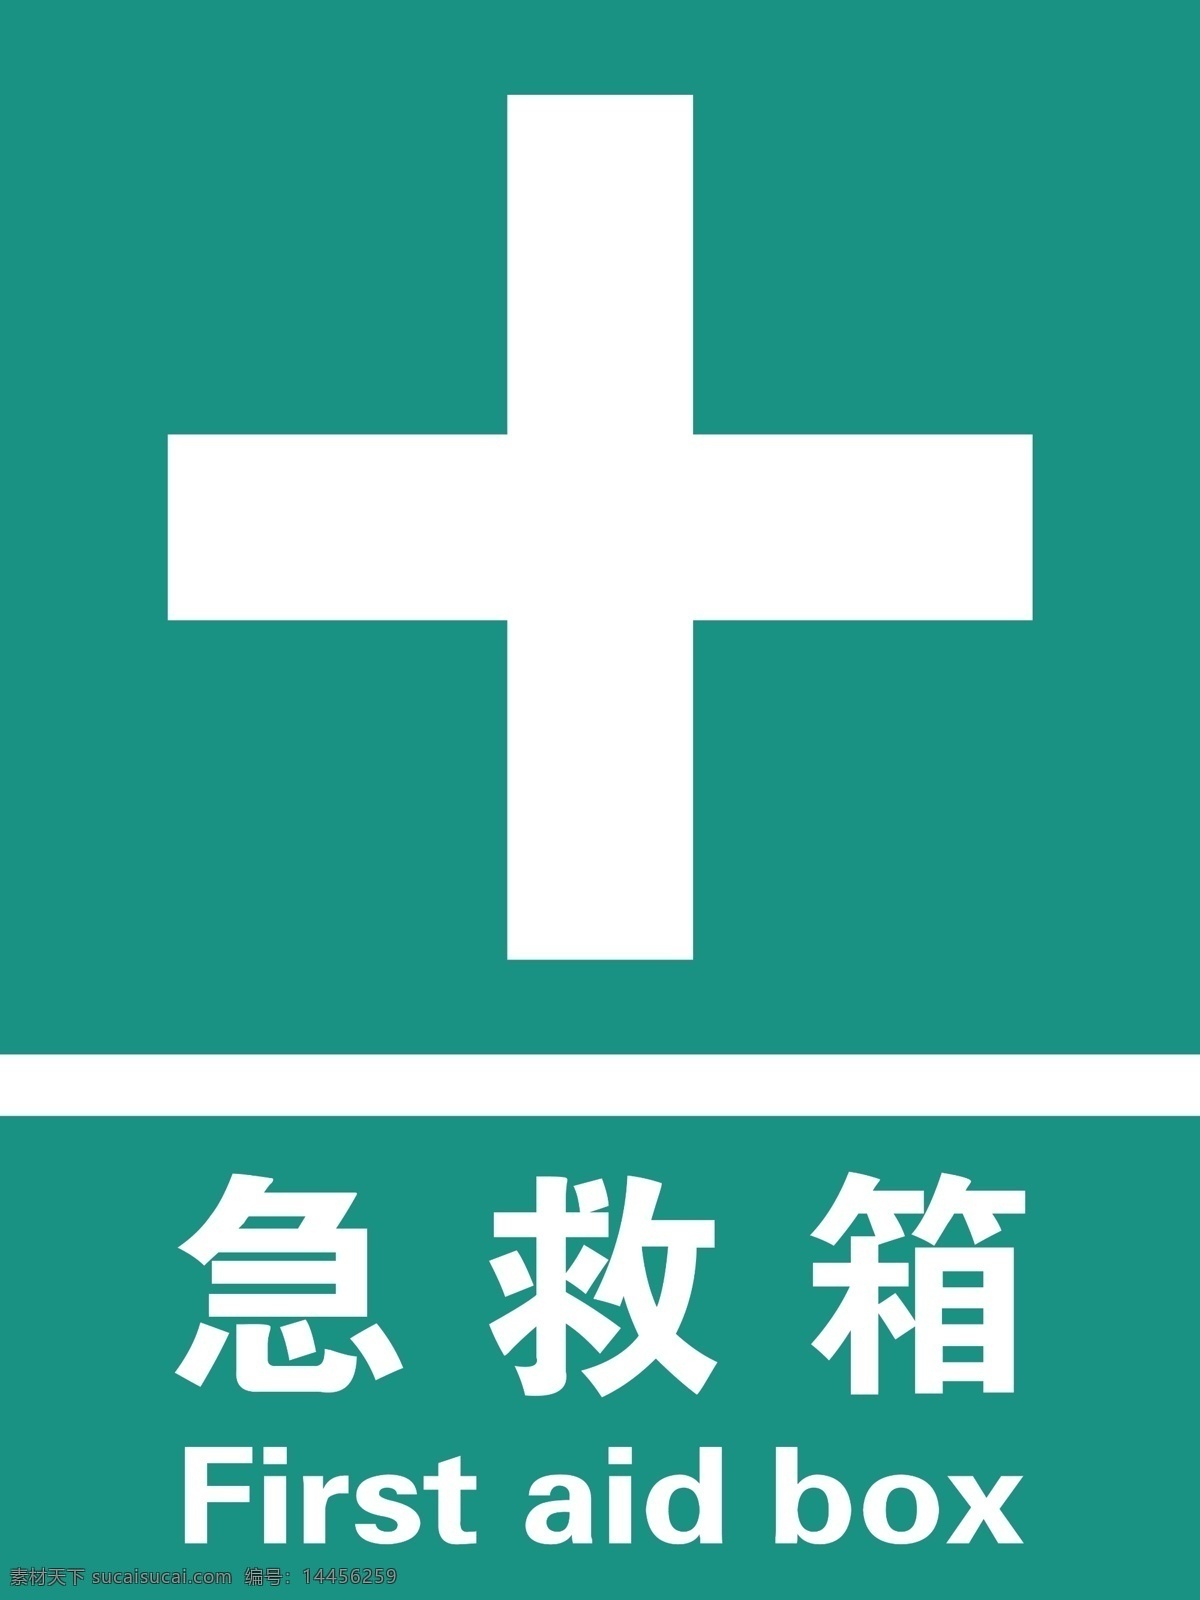 急救箱图片 急救箱 logo 急救标志 绿色 标志牌 分层